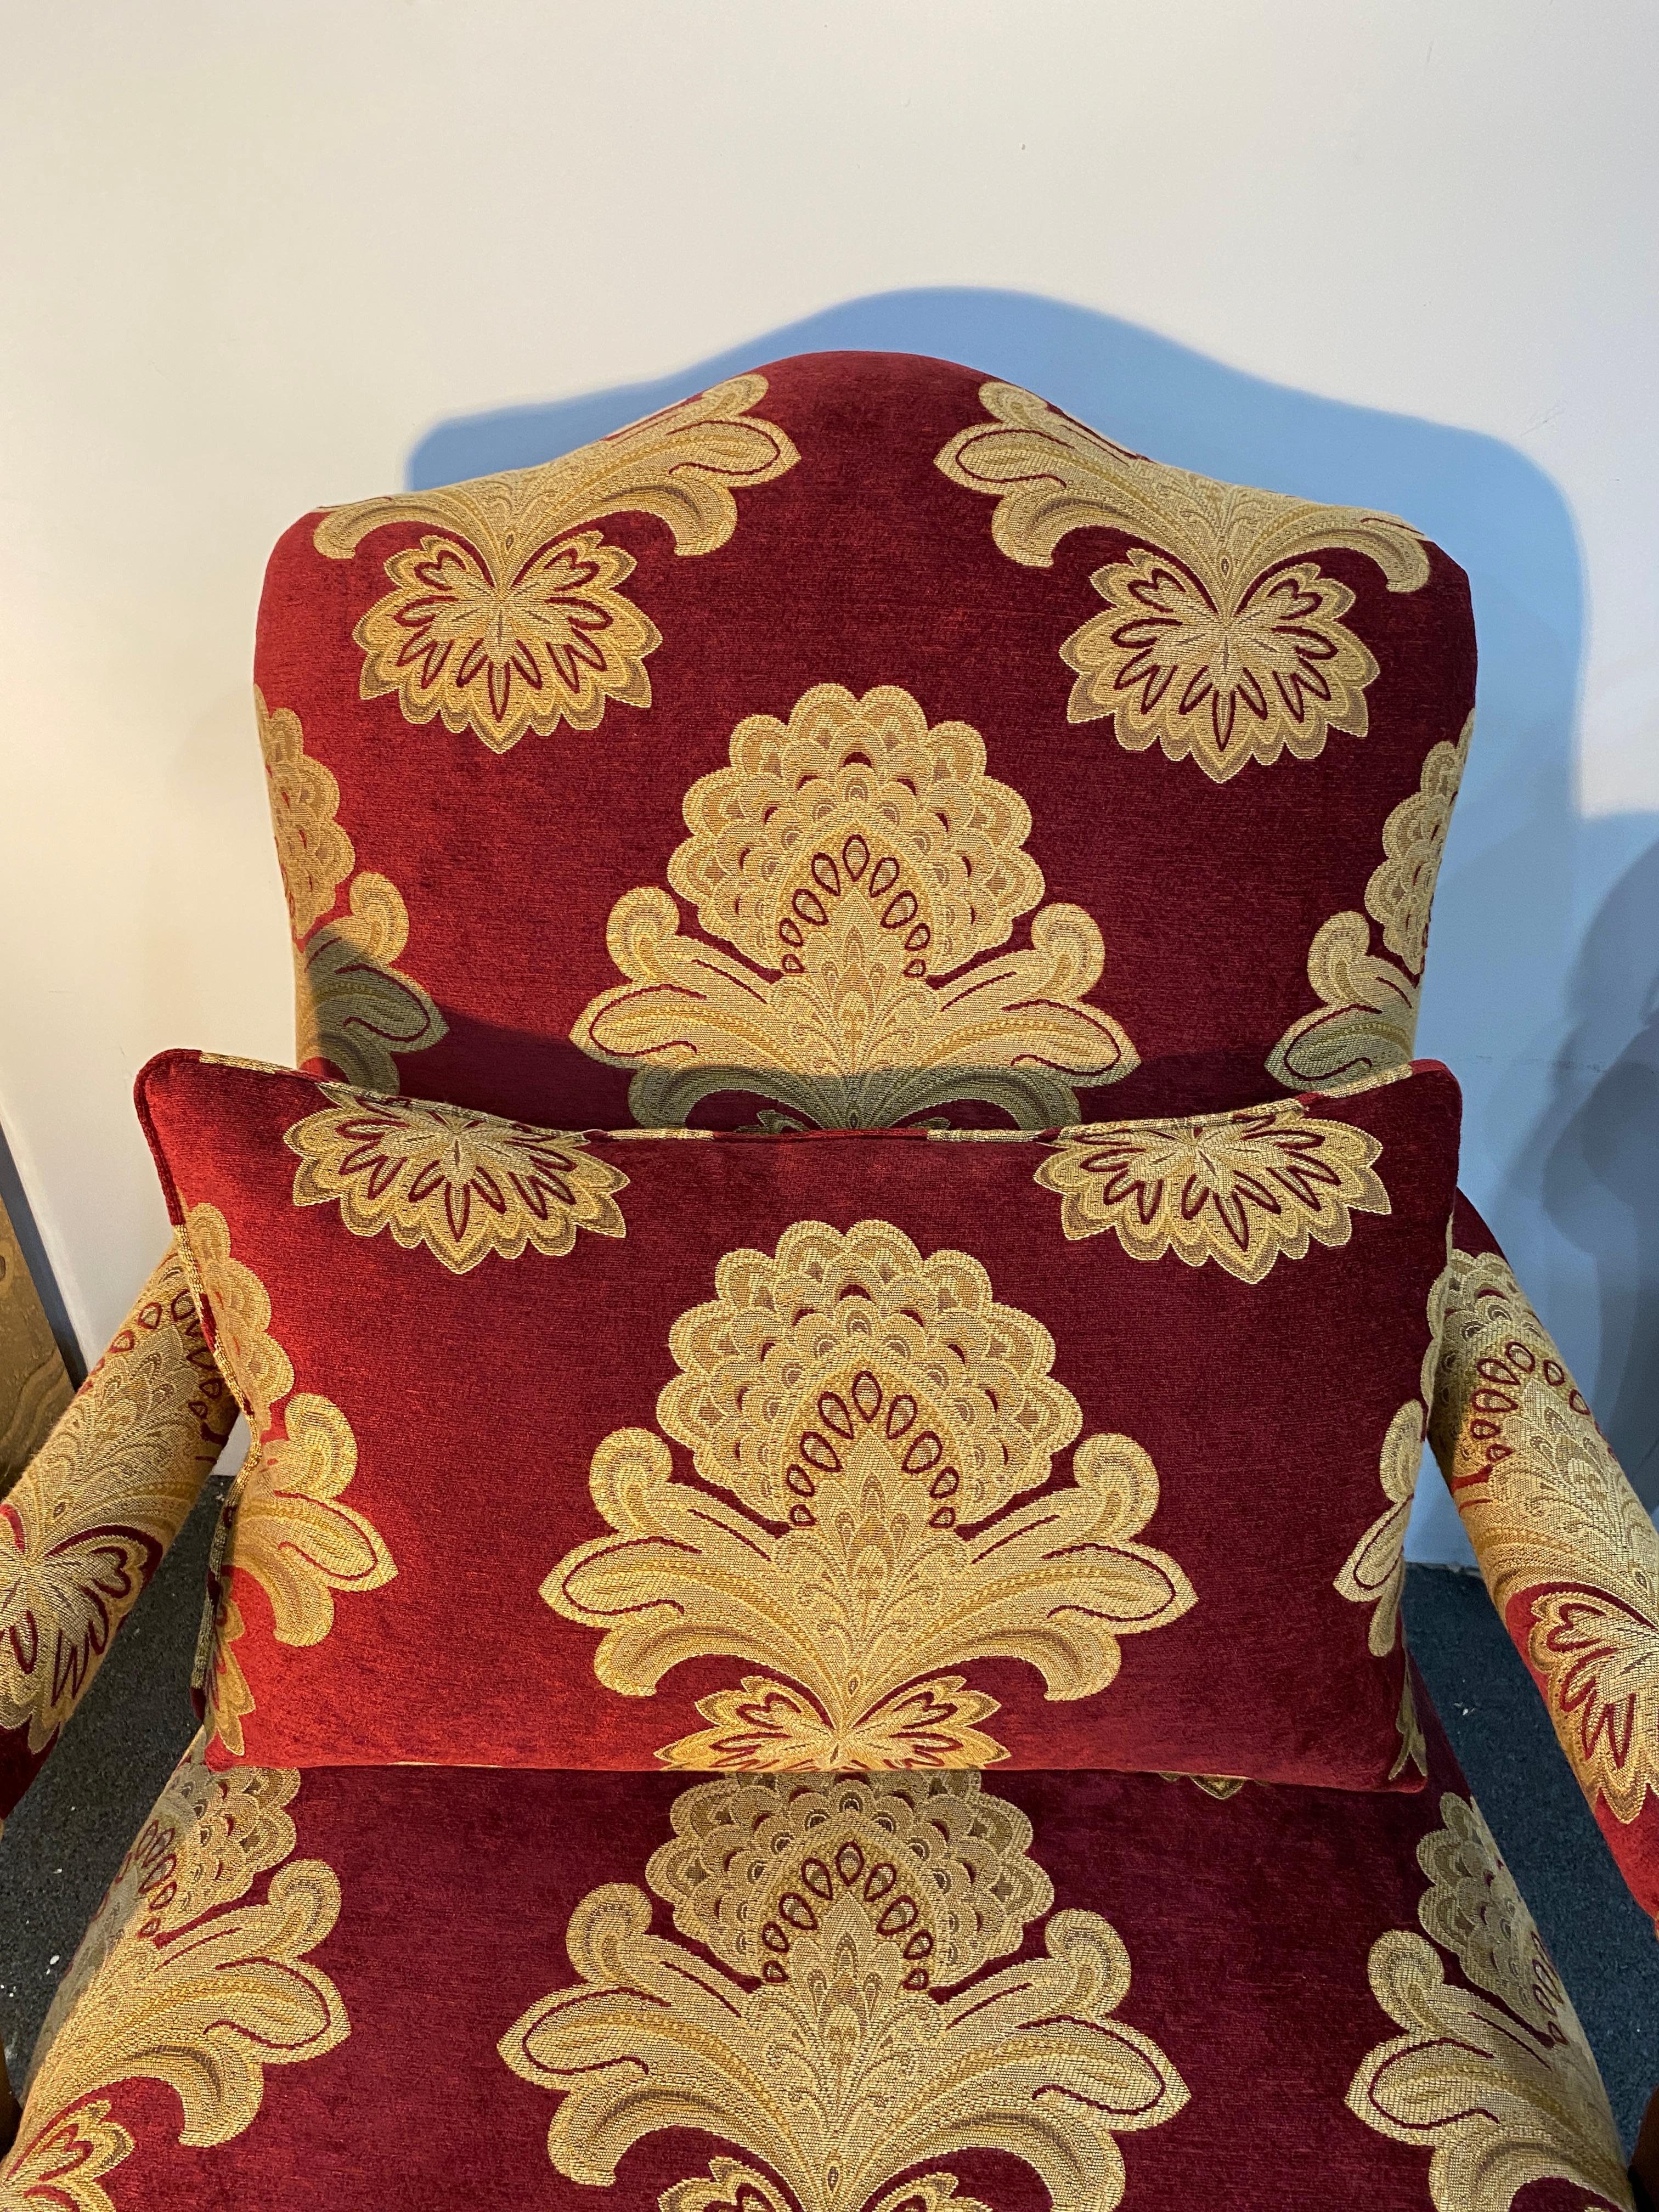 Wunderschönes Paar Bergère-Sessel oder Loungesessel im großen französischen Louis XV-Stil. Mit großen geschnitzten Rahmen im Stil und in der Größe einer Marquise bergère mit neoklassizistischen Motiven, die den Sitz schmücken. Die Rückenlehne ist